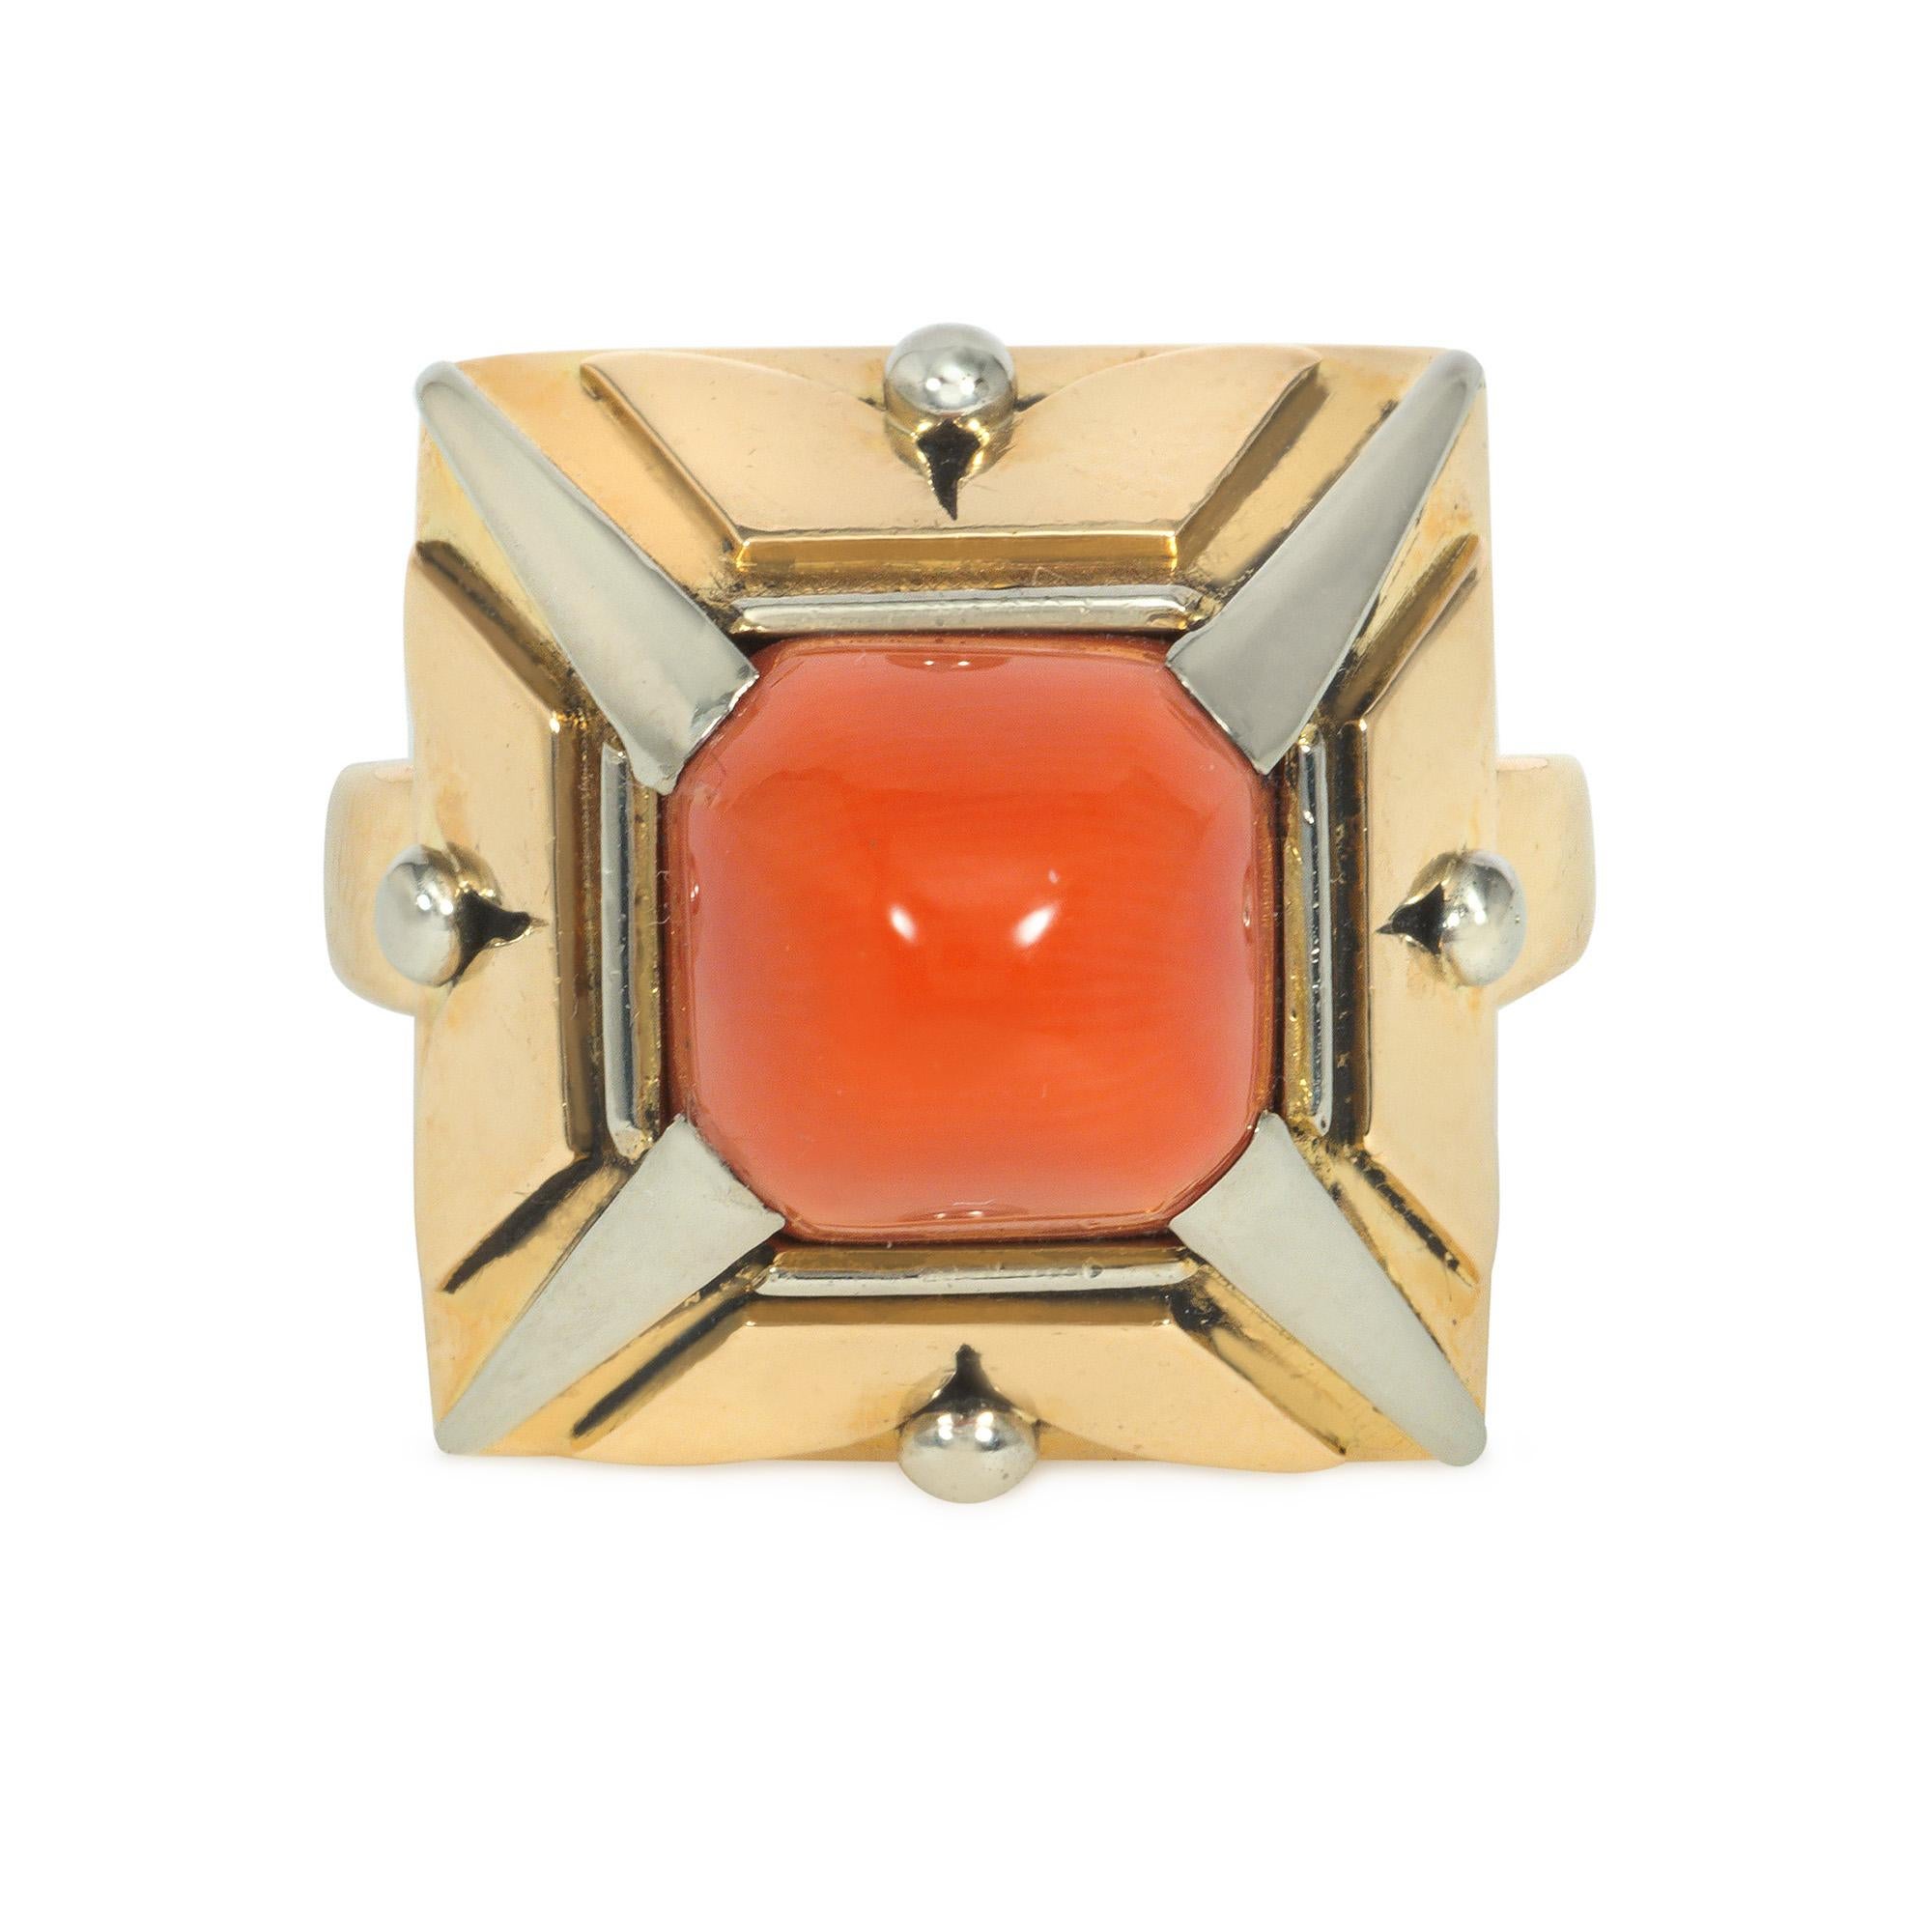 Ein Art-Deco-Ring aus Koralle, Platin und Gold mit pyramidenförmigem Design, in dessen Mitte sich ein Zuckerhut aus Koralle befindet, dessen durchbrochene Goldseiten durch spitz zulaufende Platinstäbe getrennt sind, in 18k.  Abmessungen mit der